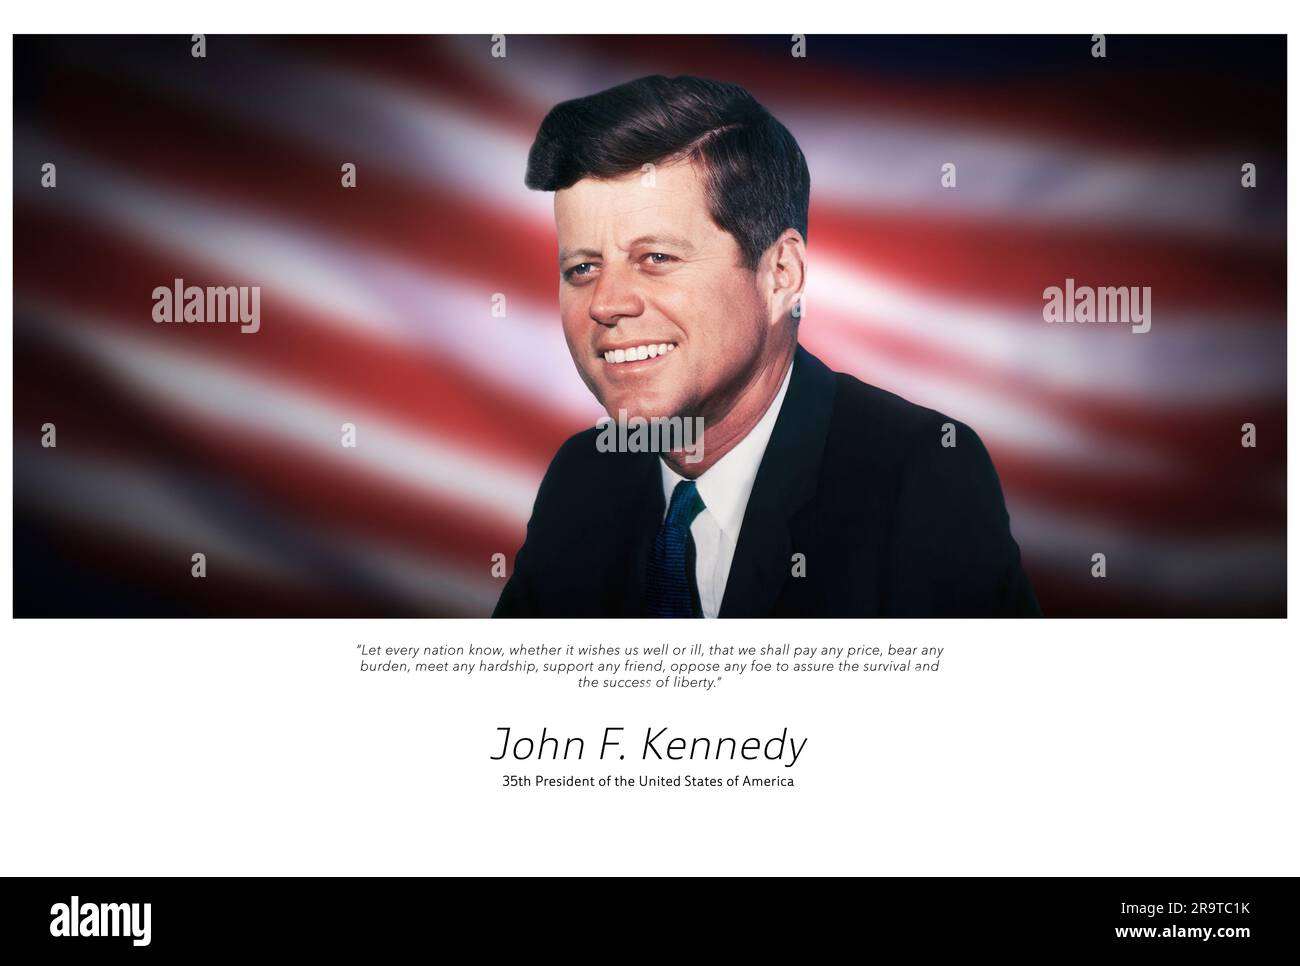 Porträt von John F. Kennedy, 35. Präsident der Vereinigten Staaten von Amerika Stockfoto